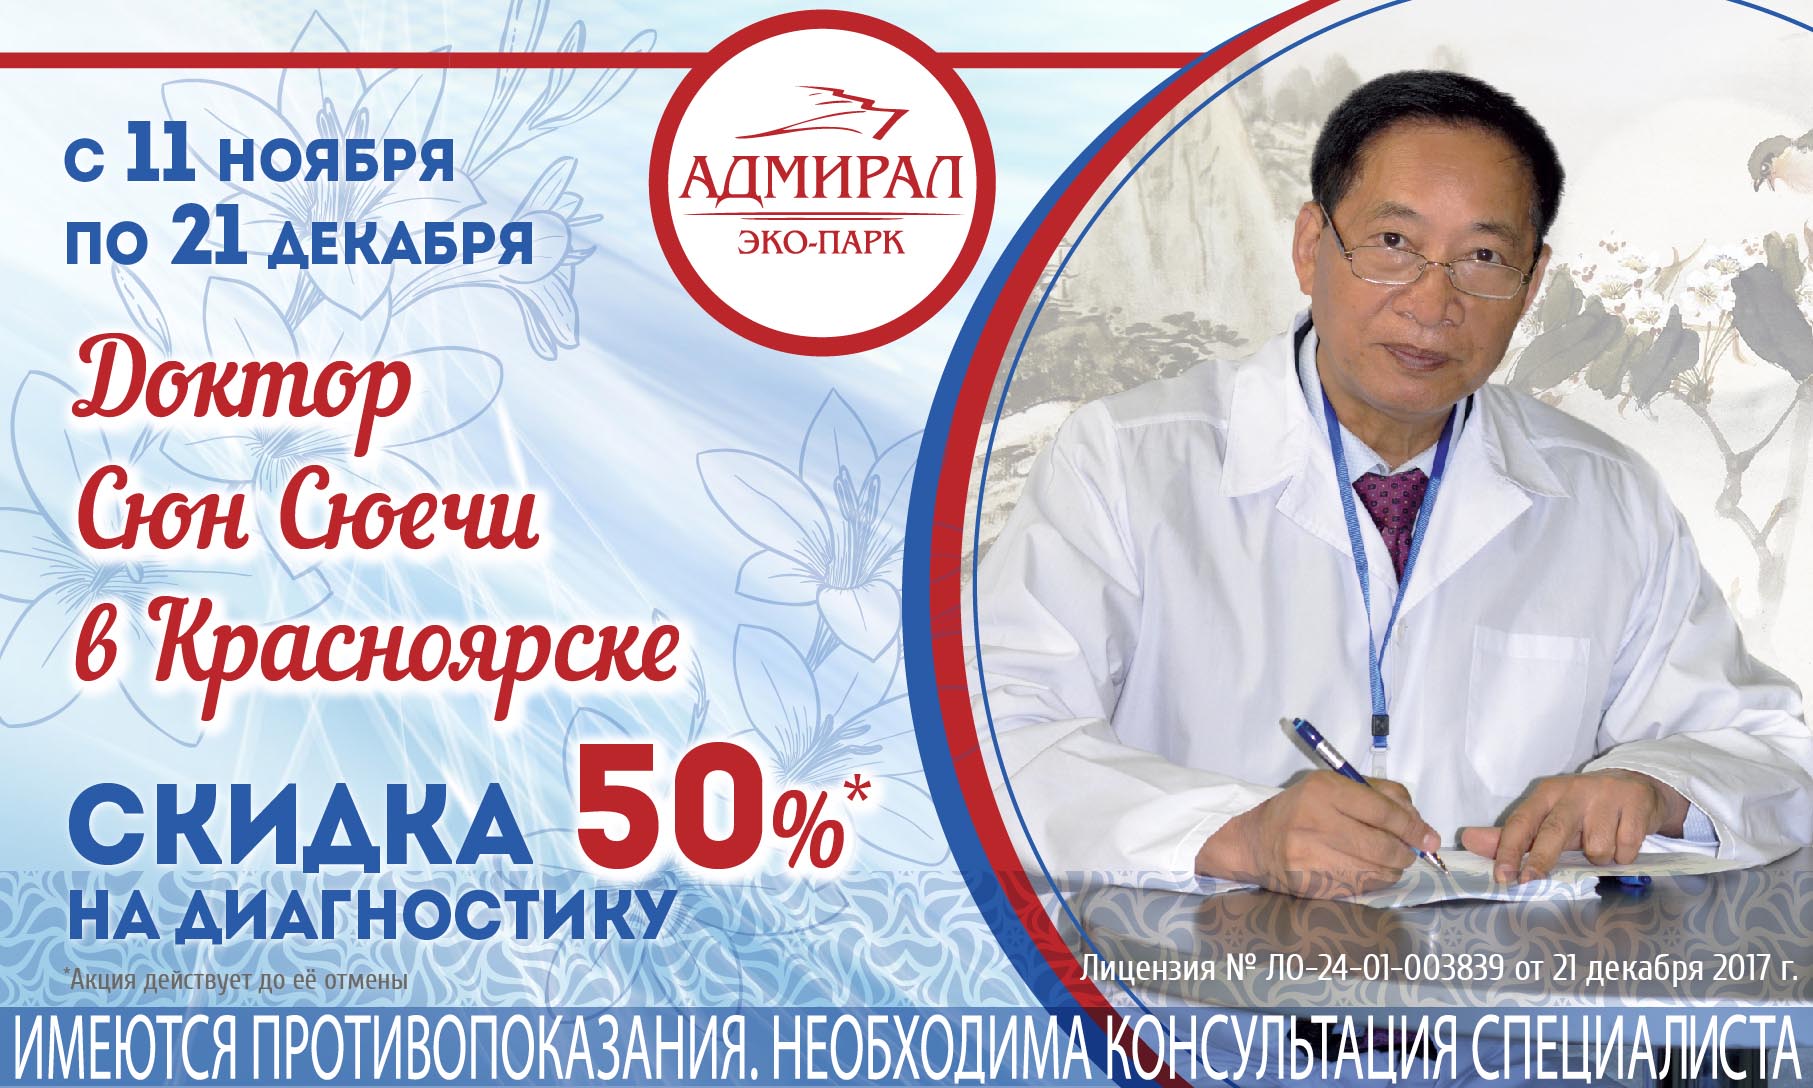 Доктор Сюн Сюечи в Красноярске! | Эко-Парк Адмирал